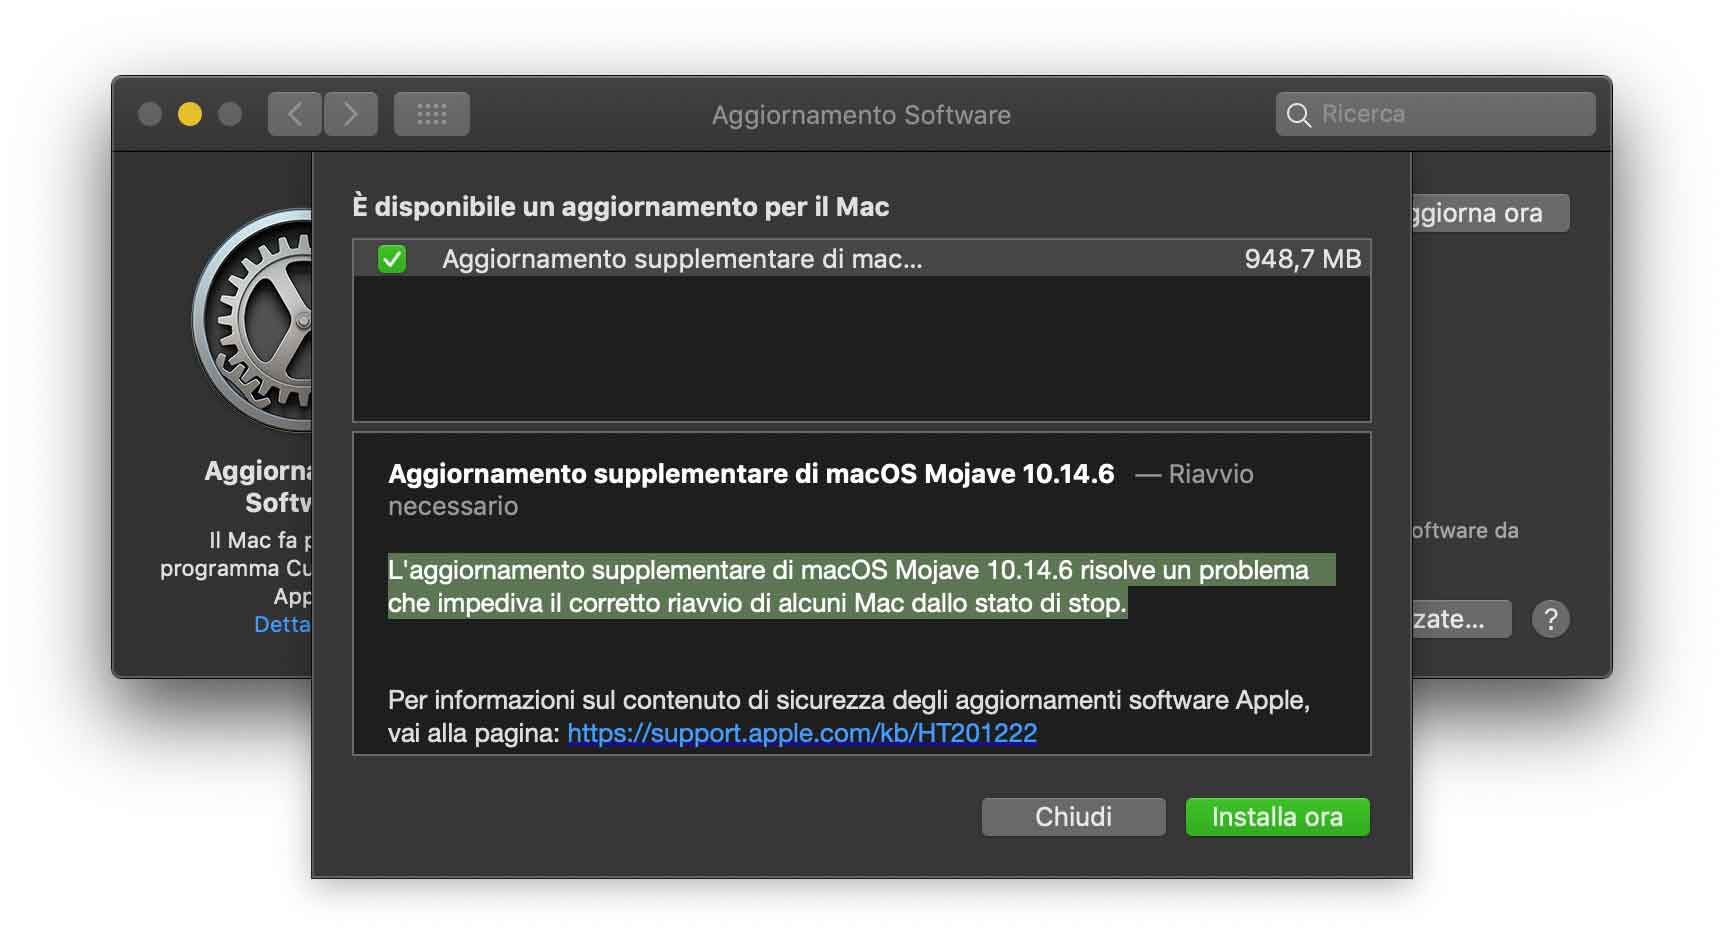 Disponibile update supplementare di macOS 10.14.6 per risolvere un bug con la riattivazione dallo stop